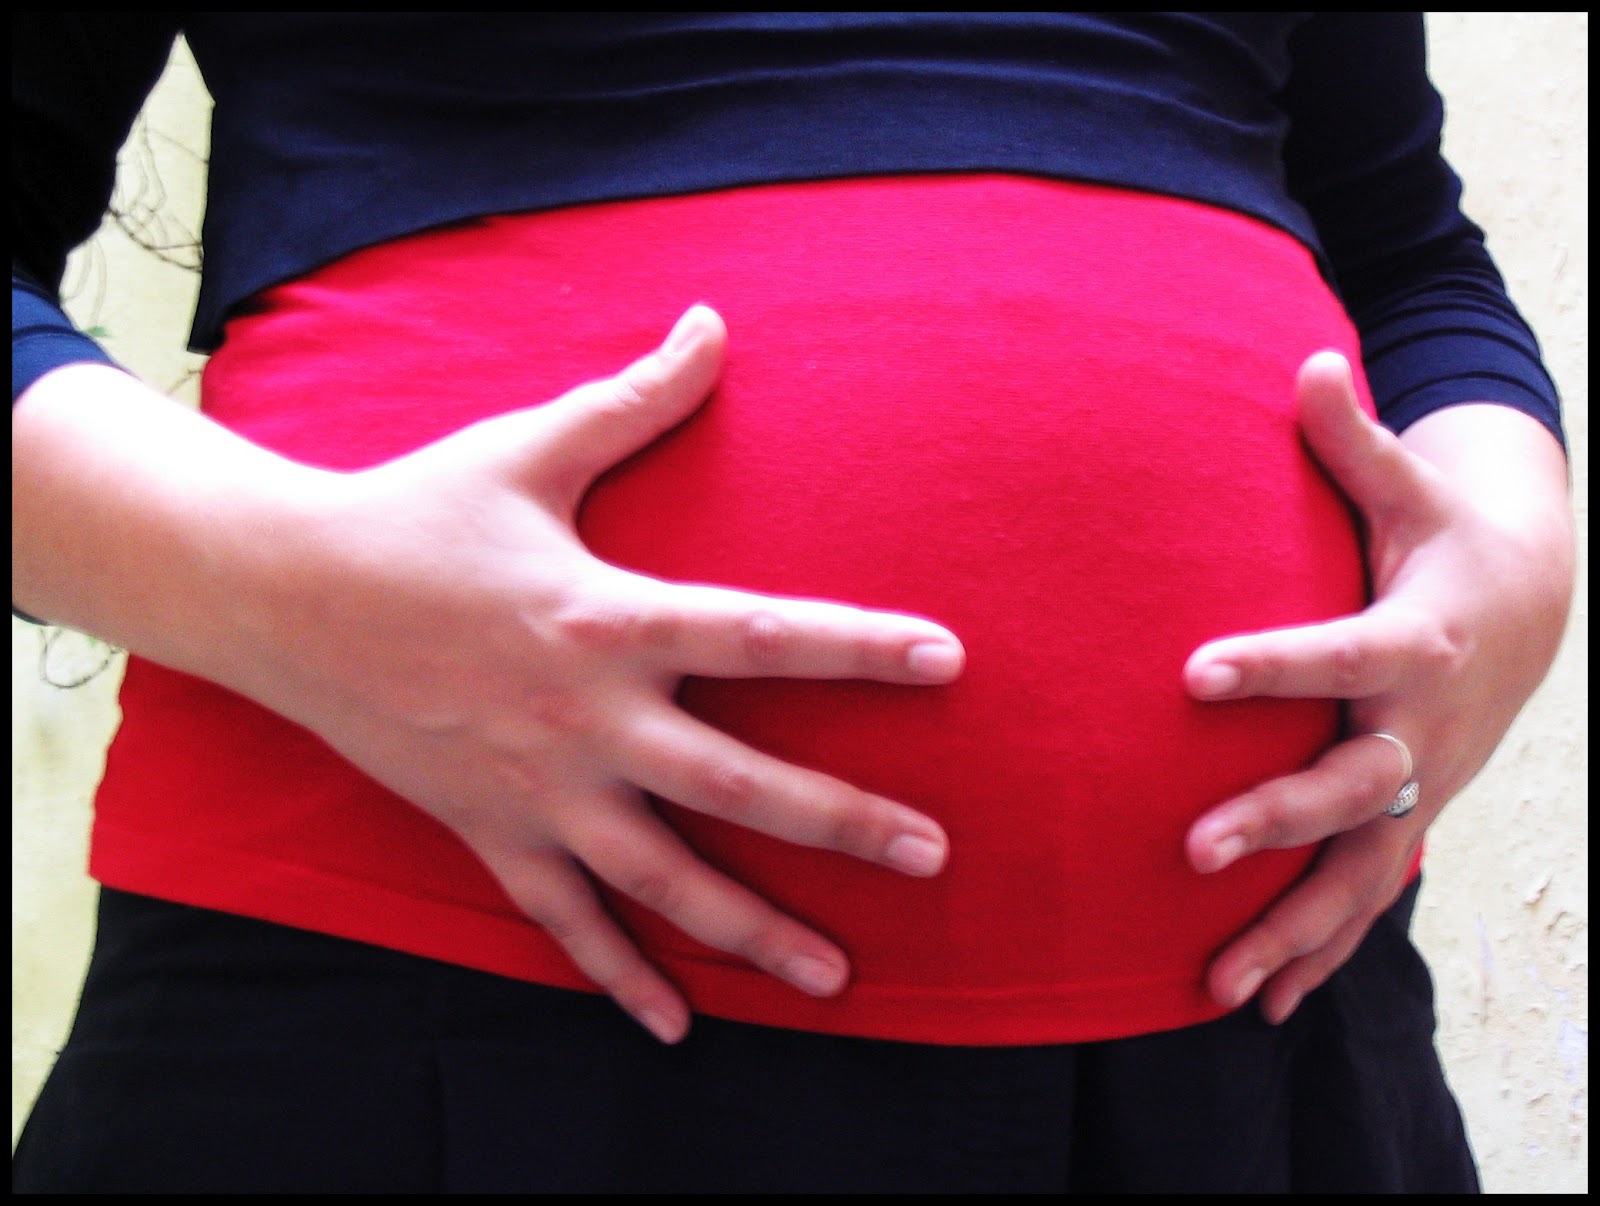 Σοκ: 11χρονη έγκυος πρόκειται να γίνει η νεότερη μητέρα της Βρετανίας!